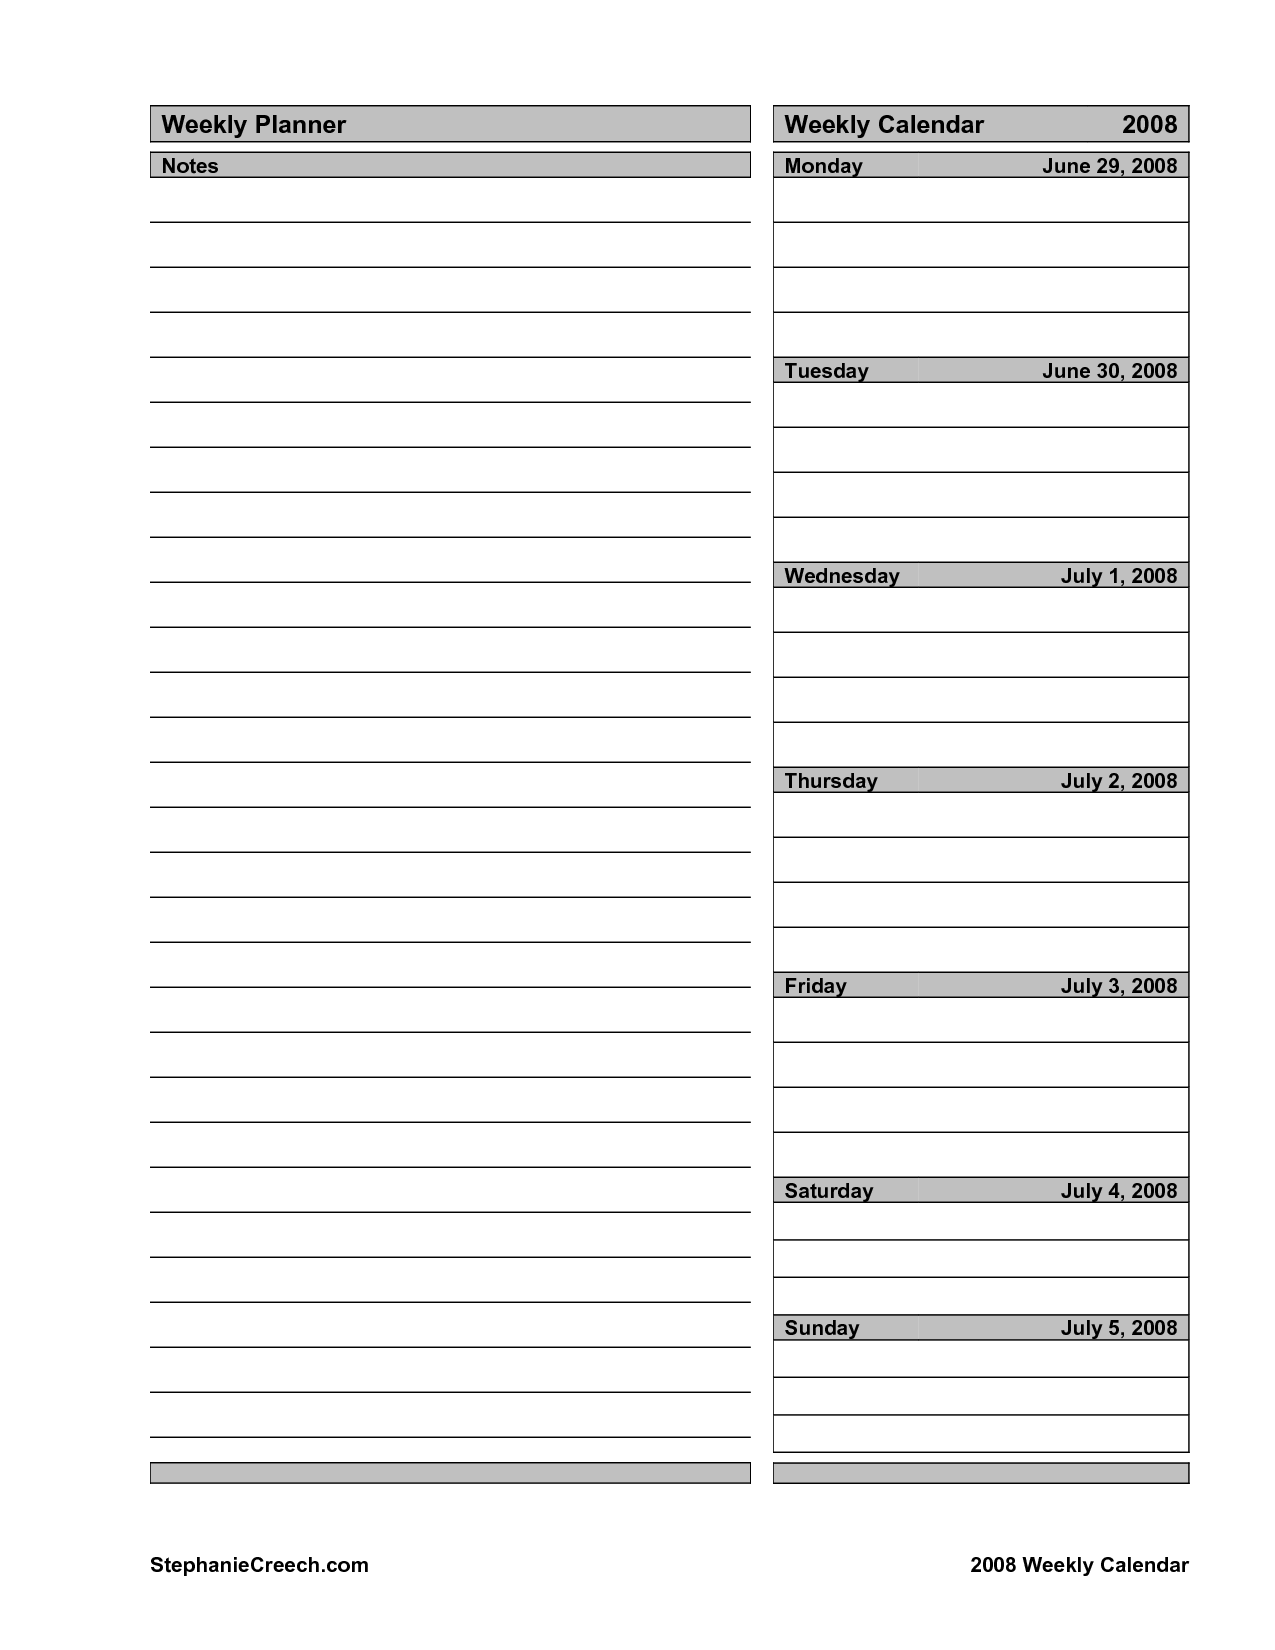 Goal Setting Worksheet Weekly Planner Image